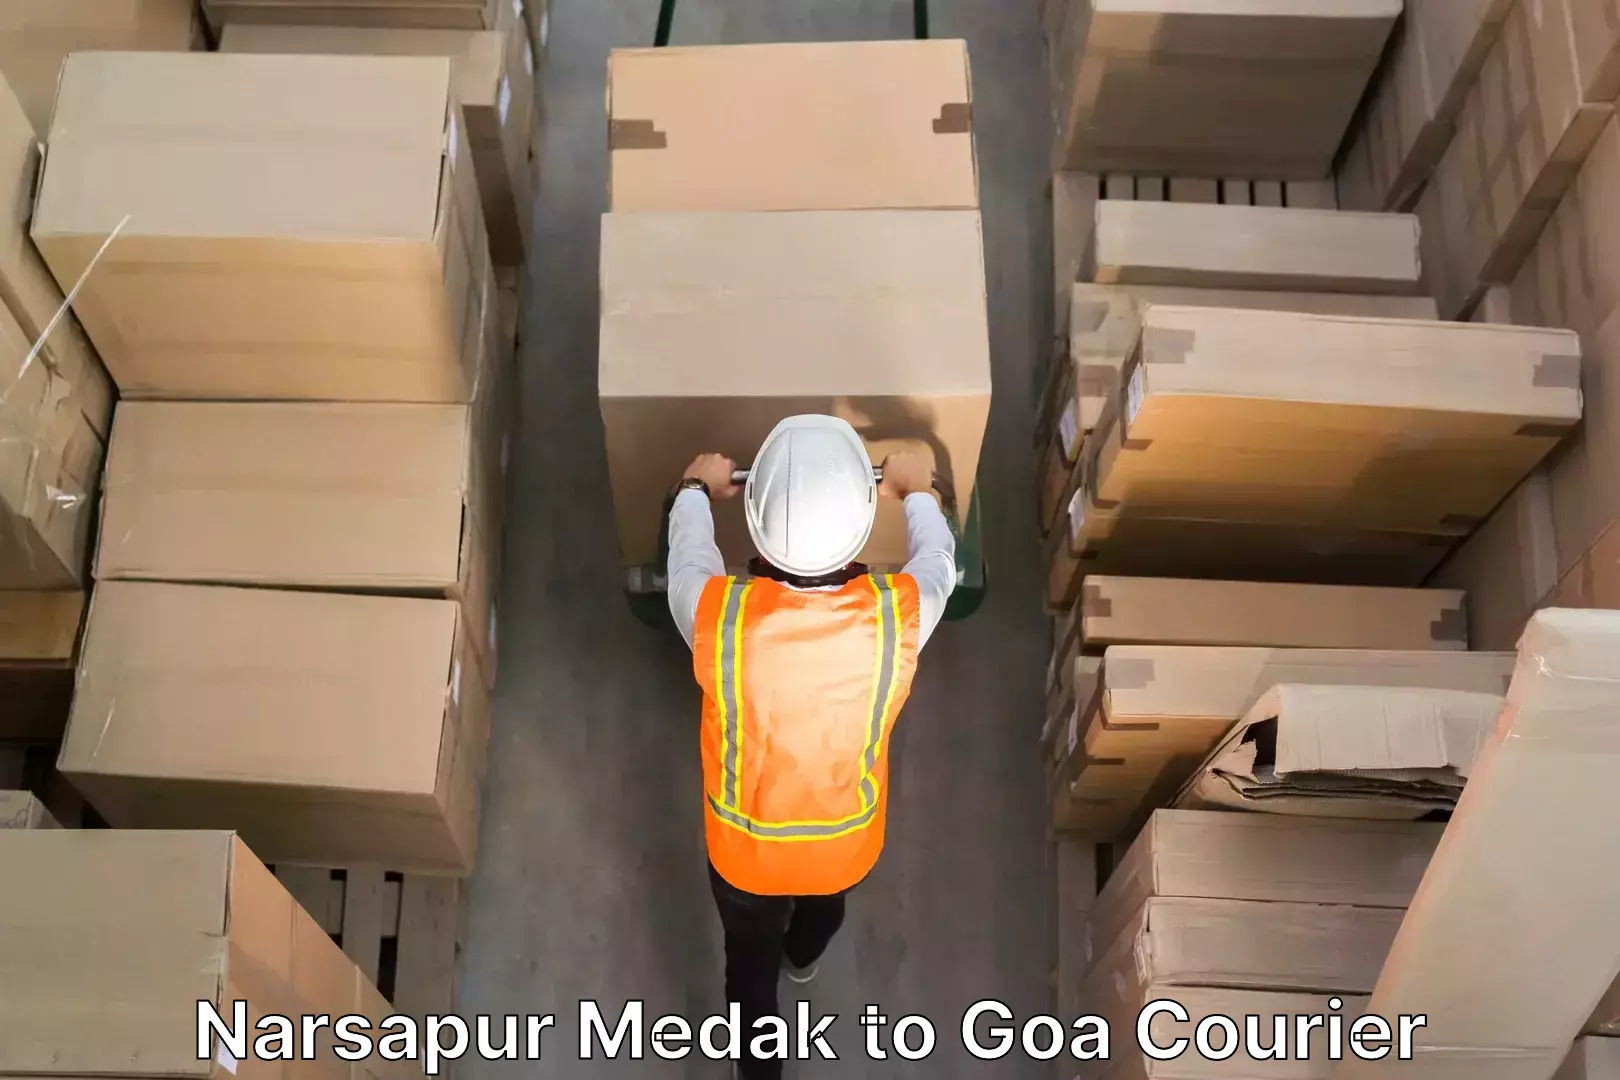 Residential moving experts Narsapur Medak to Goa